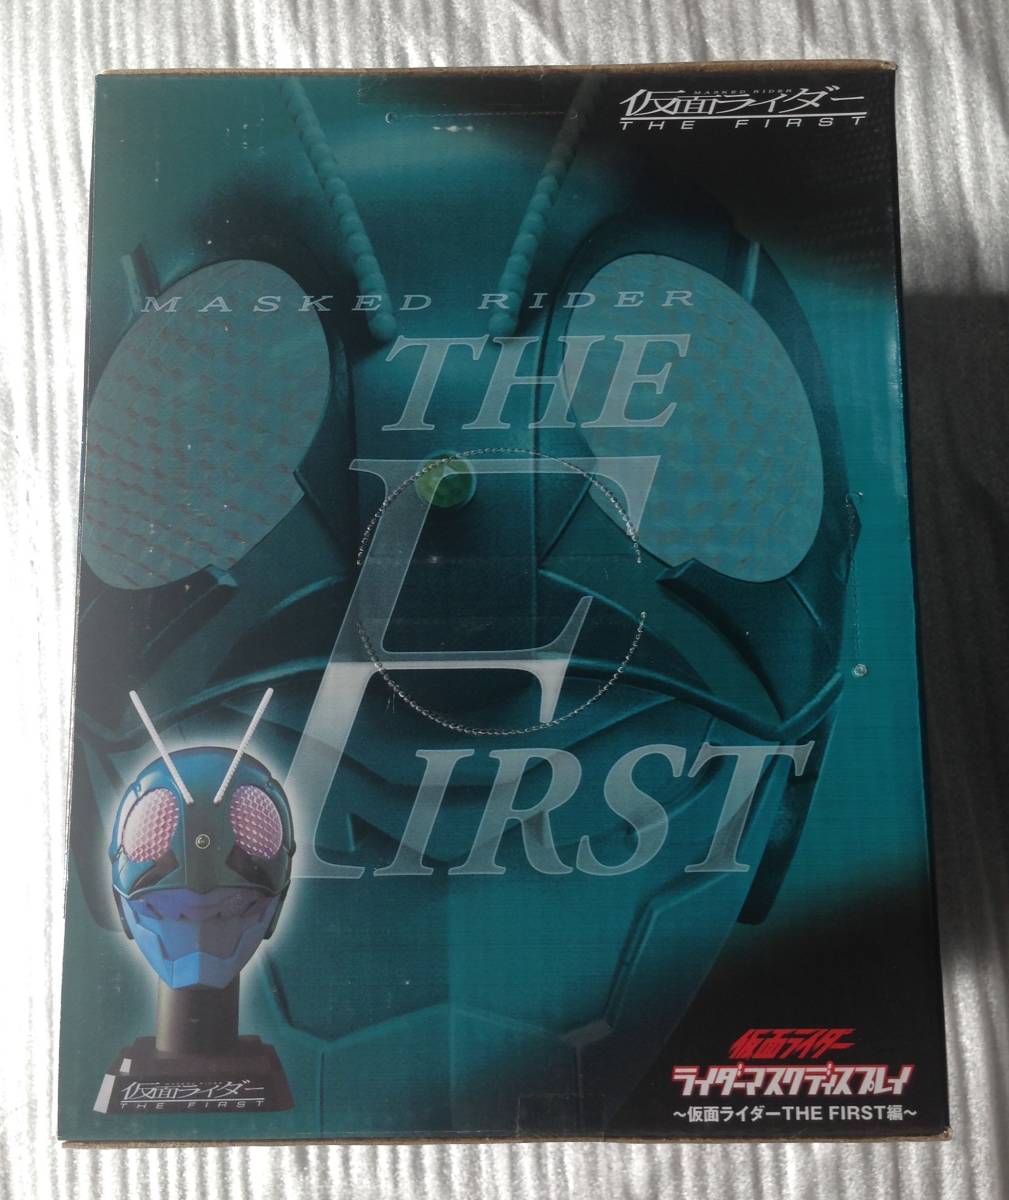  Kamen Rider 1 номер rider маска дисплей ~ Kamen Rider THE FIRST сборник ~ * быстрое решение *